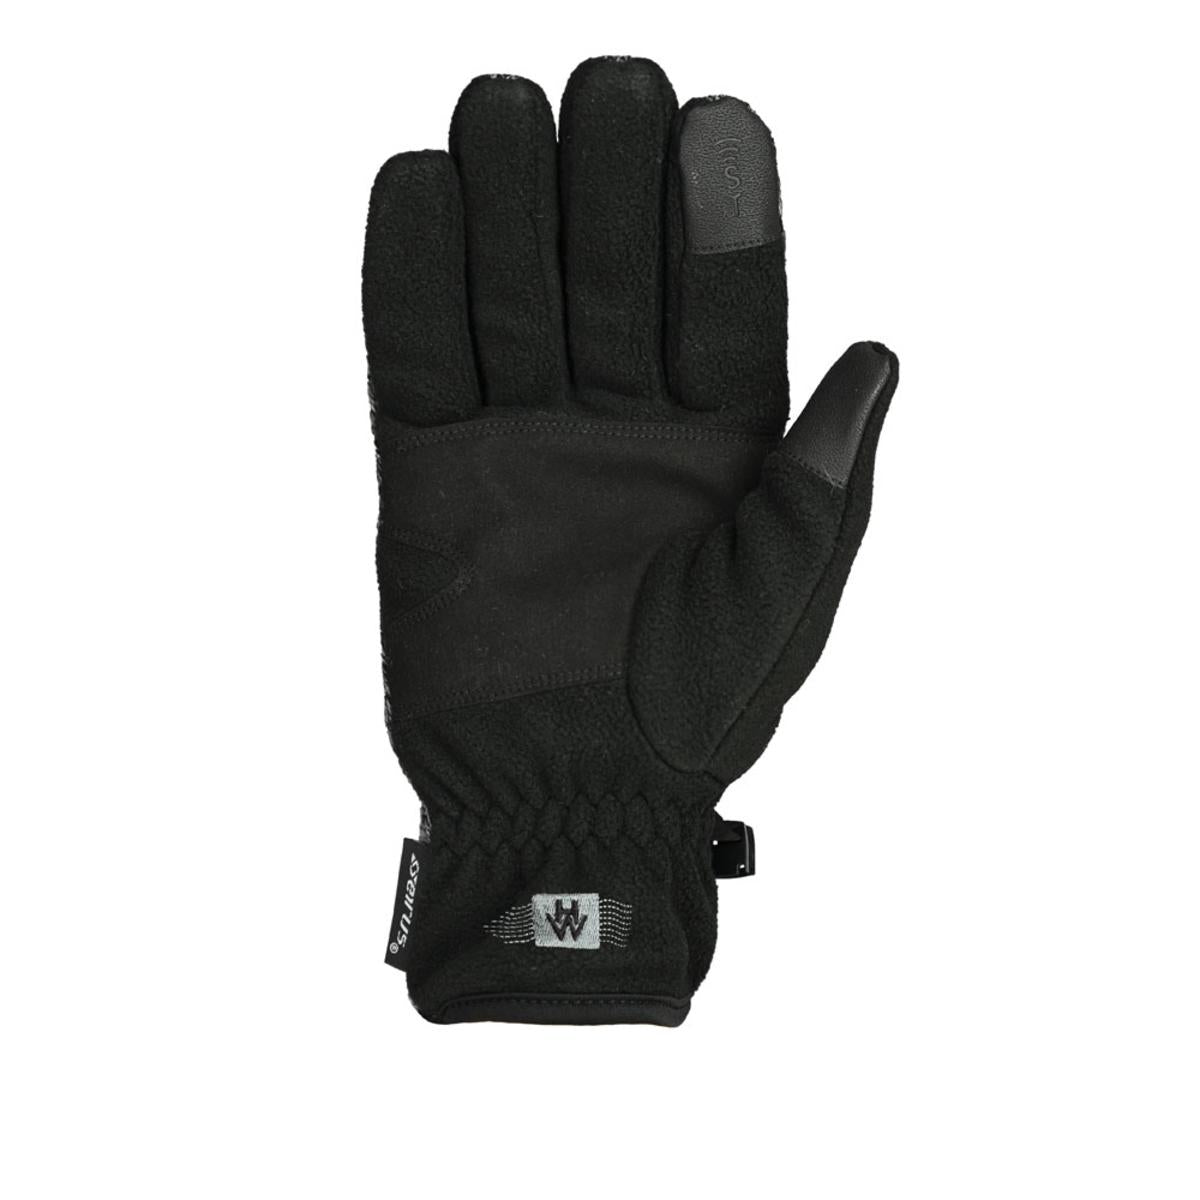 Seirus Men's Heatwave ST Ravine Fleece Gloves